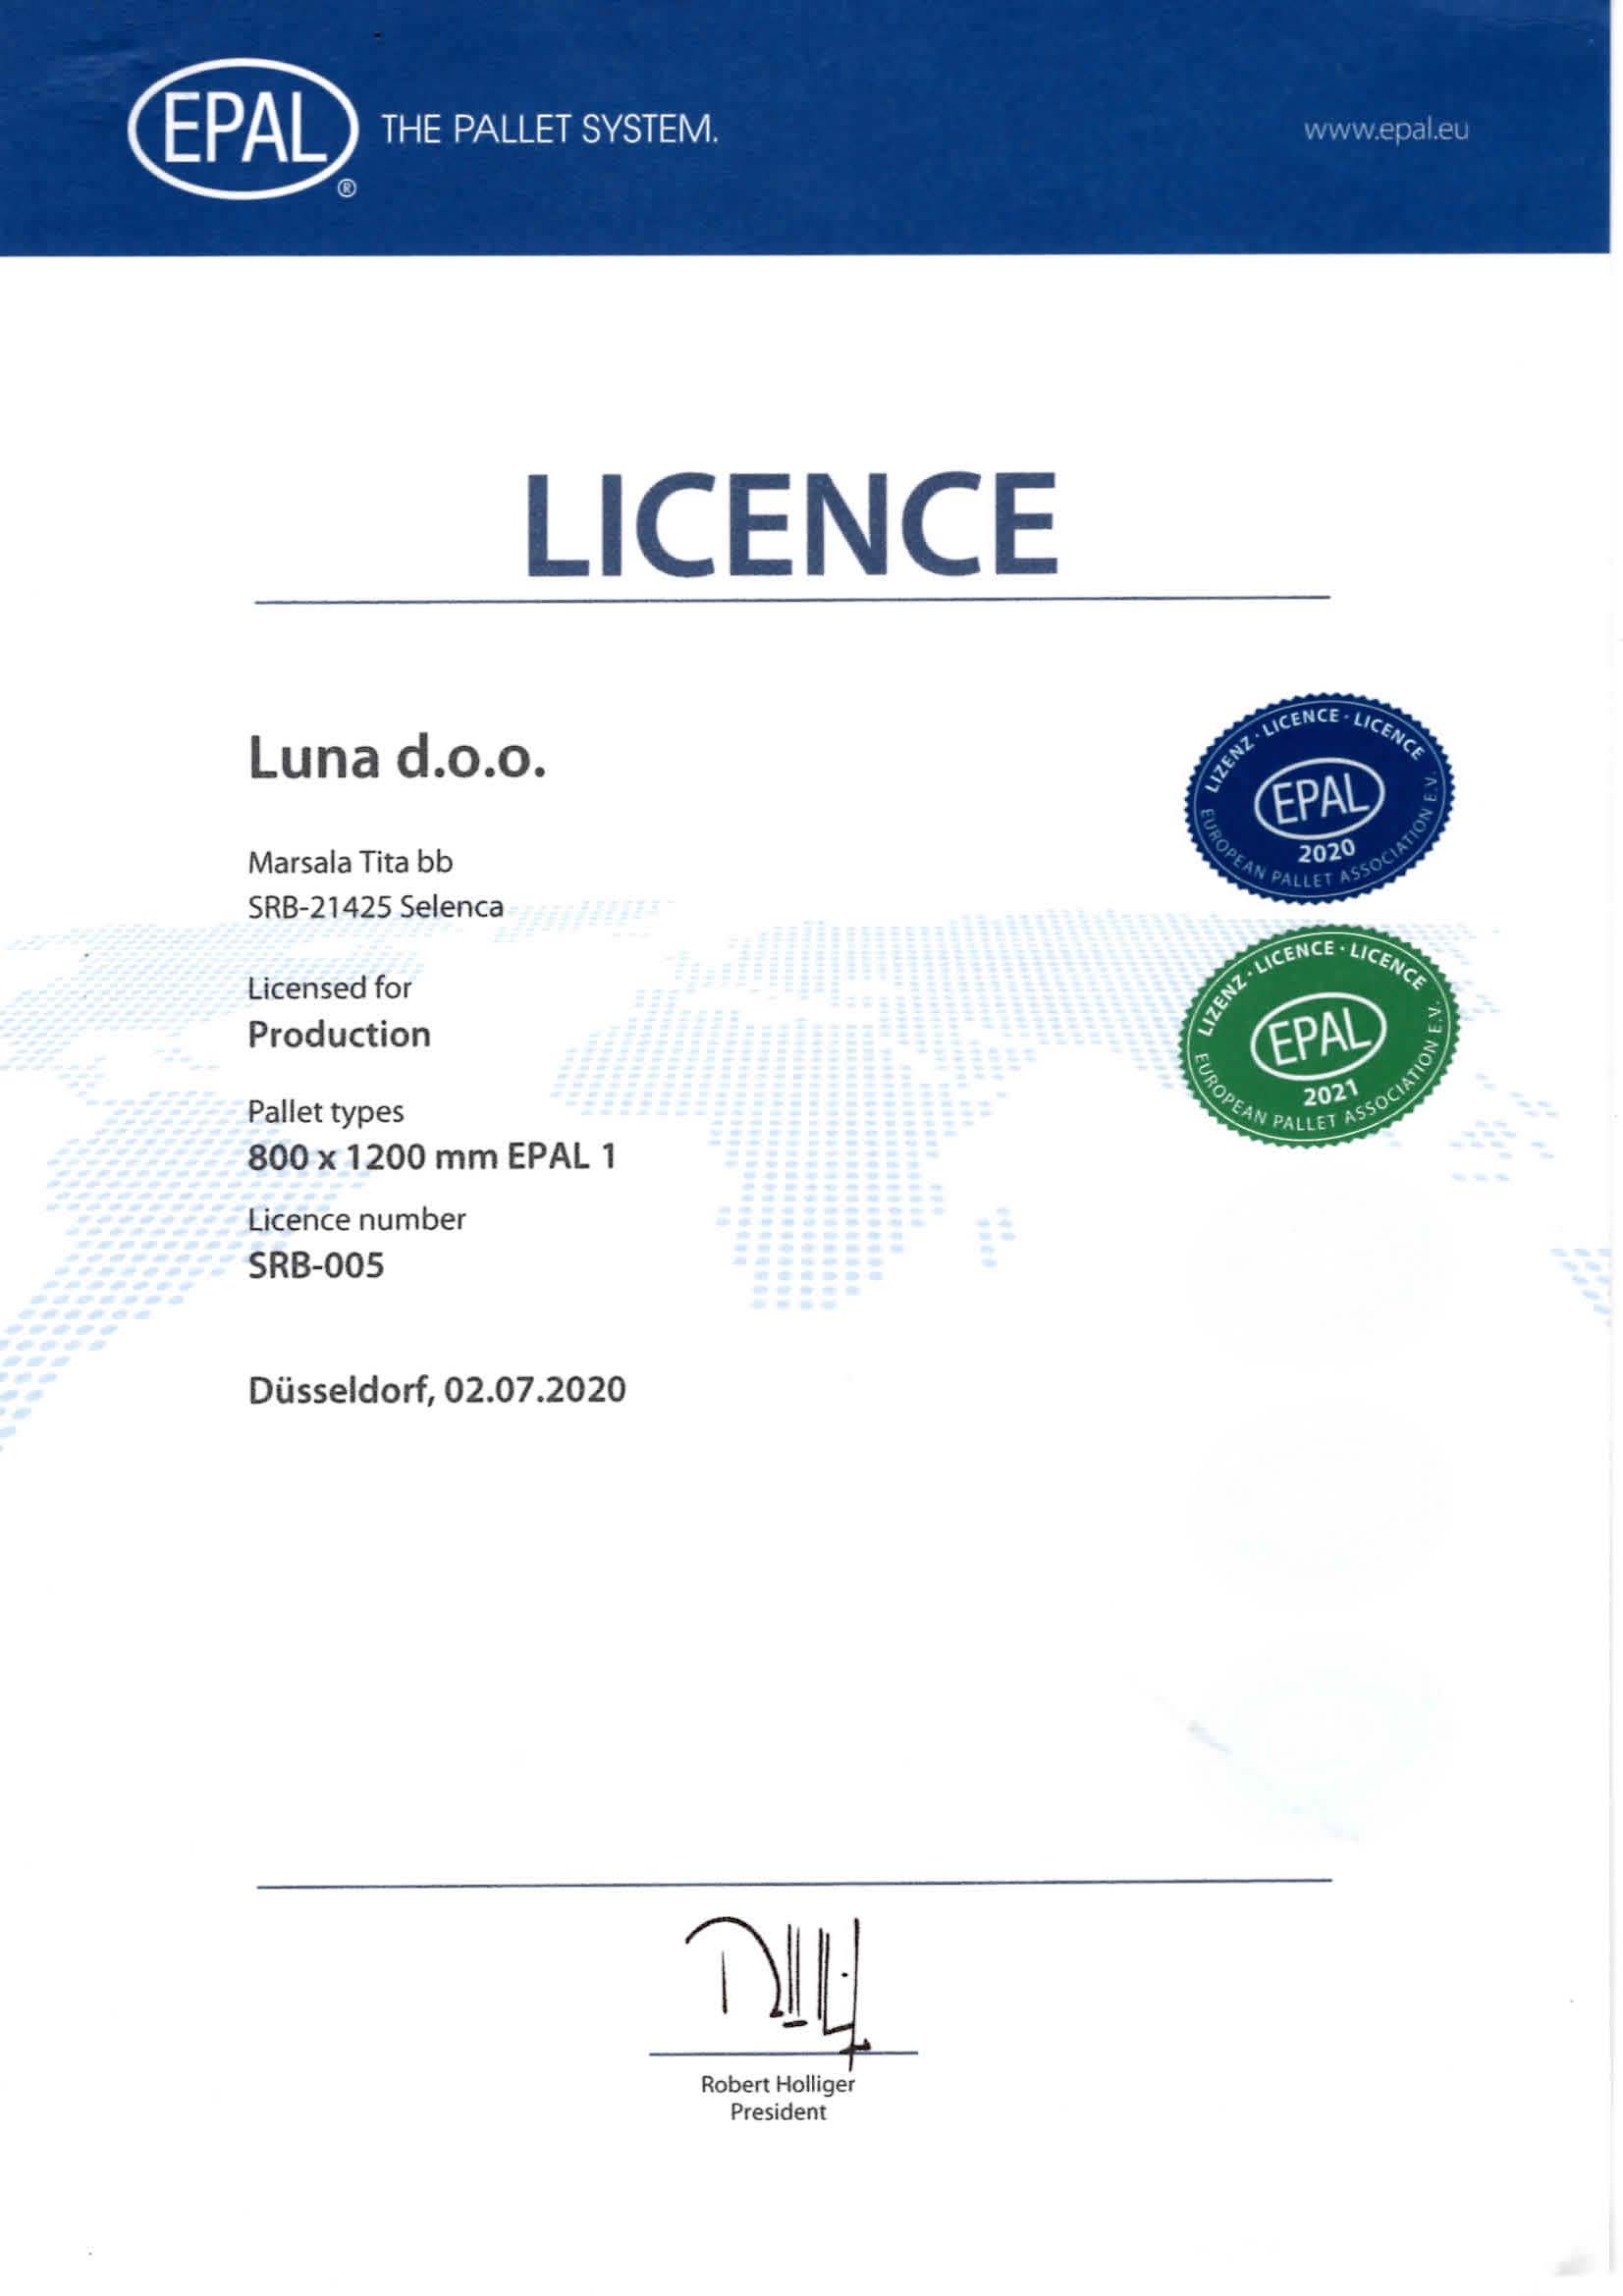 Luna d.o.o. license